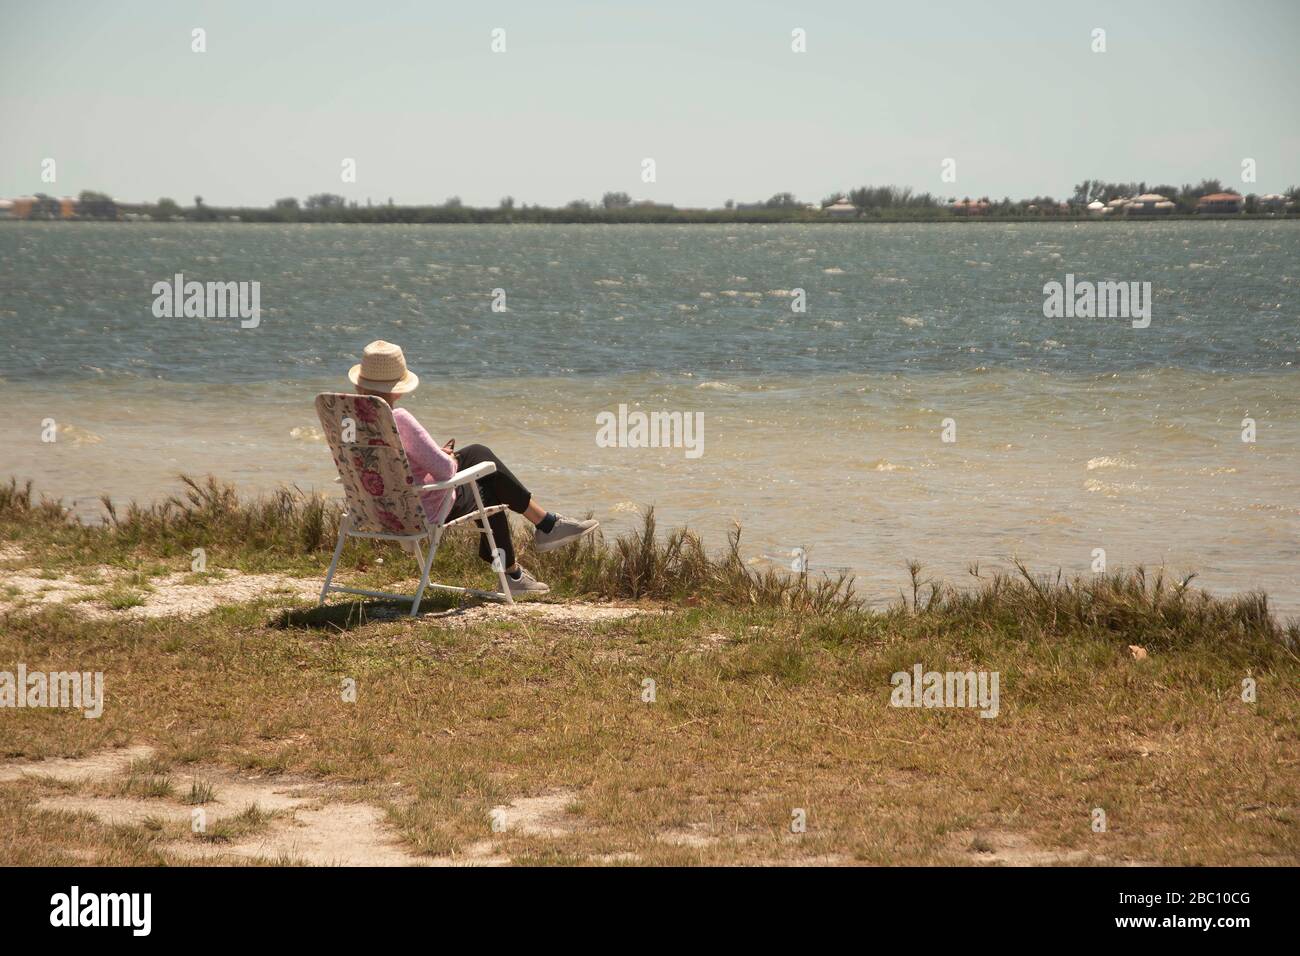 Una donna solista pratica la distanza sociale mentre siede nella sua sedia all'Indian Mound Park in Englewood, Florida, USA mentre si affaccia Lemon Bay. Florida' Foto Stock